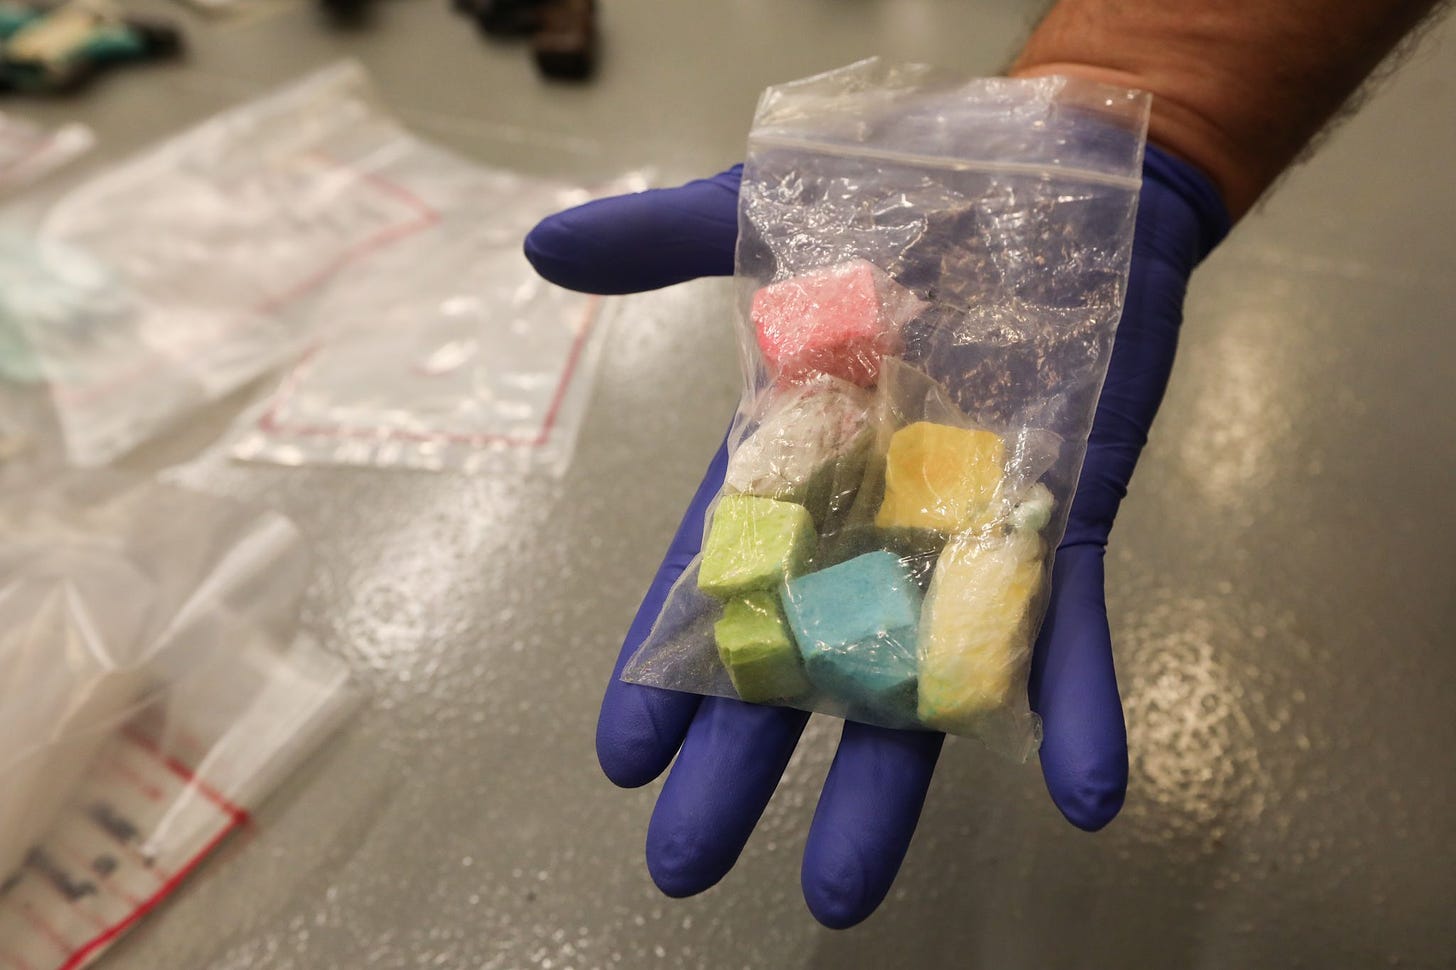 Feds warn of so-called rainbow fentanyl in Oregon - OPB